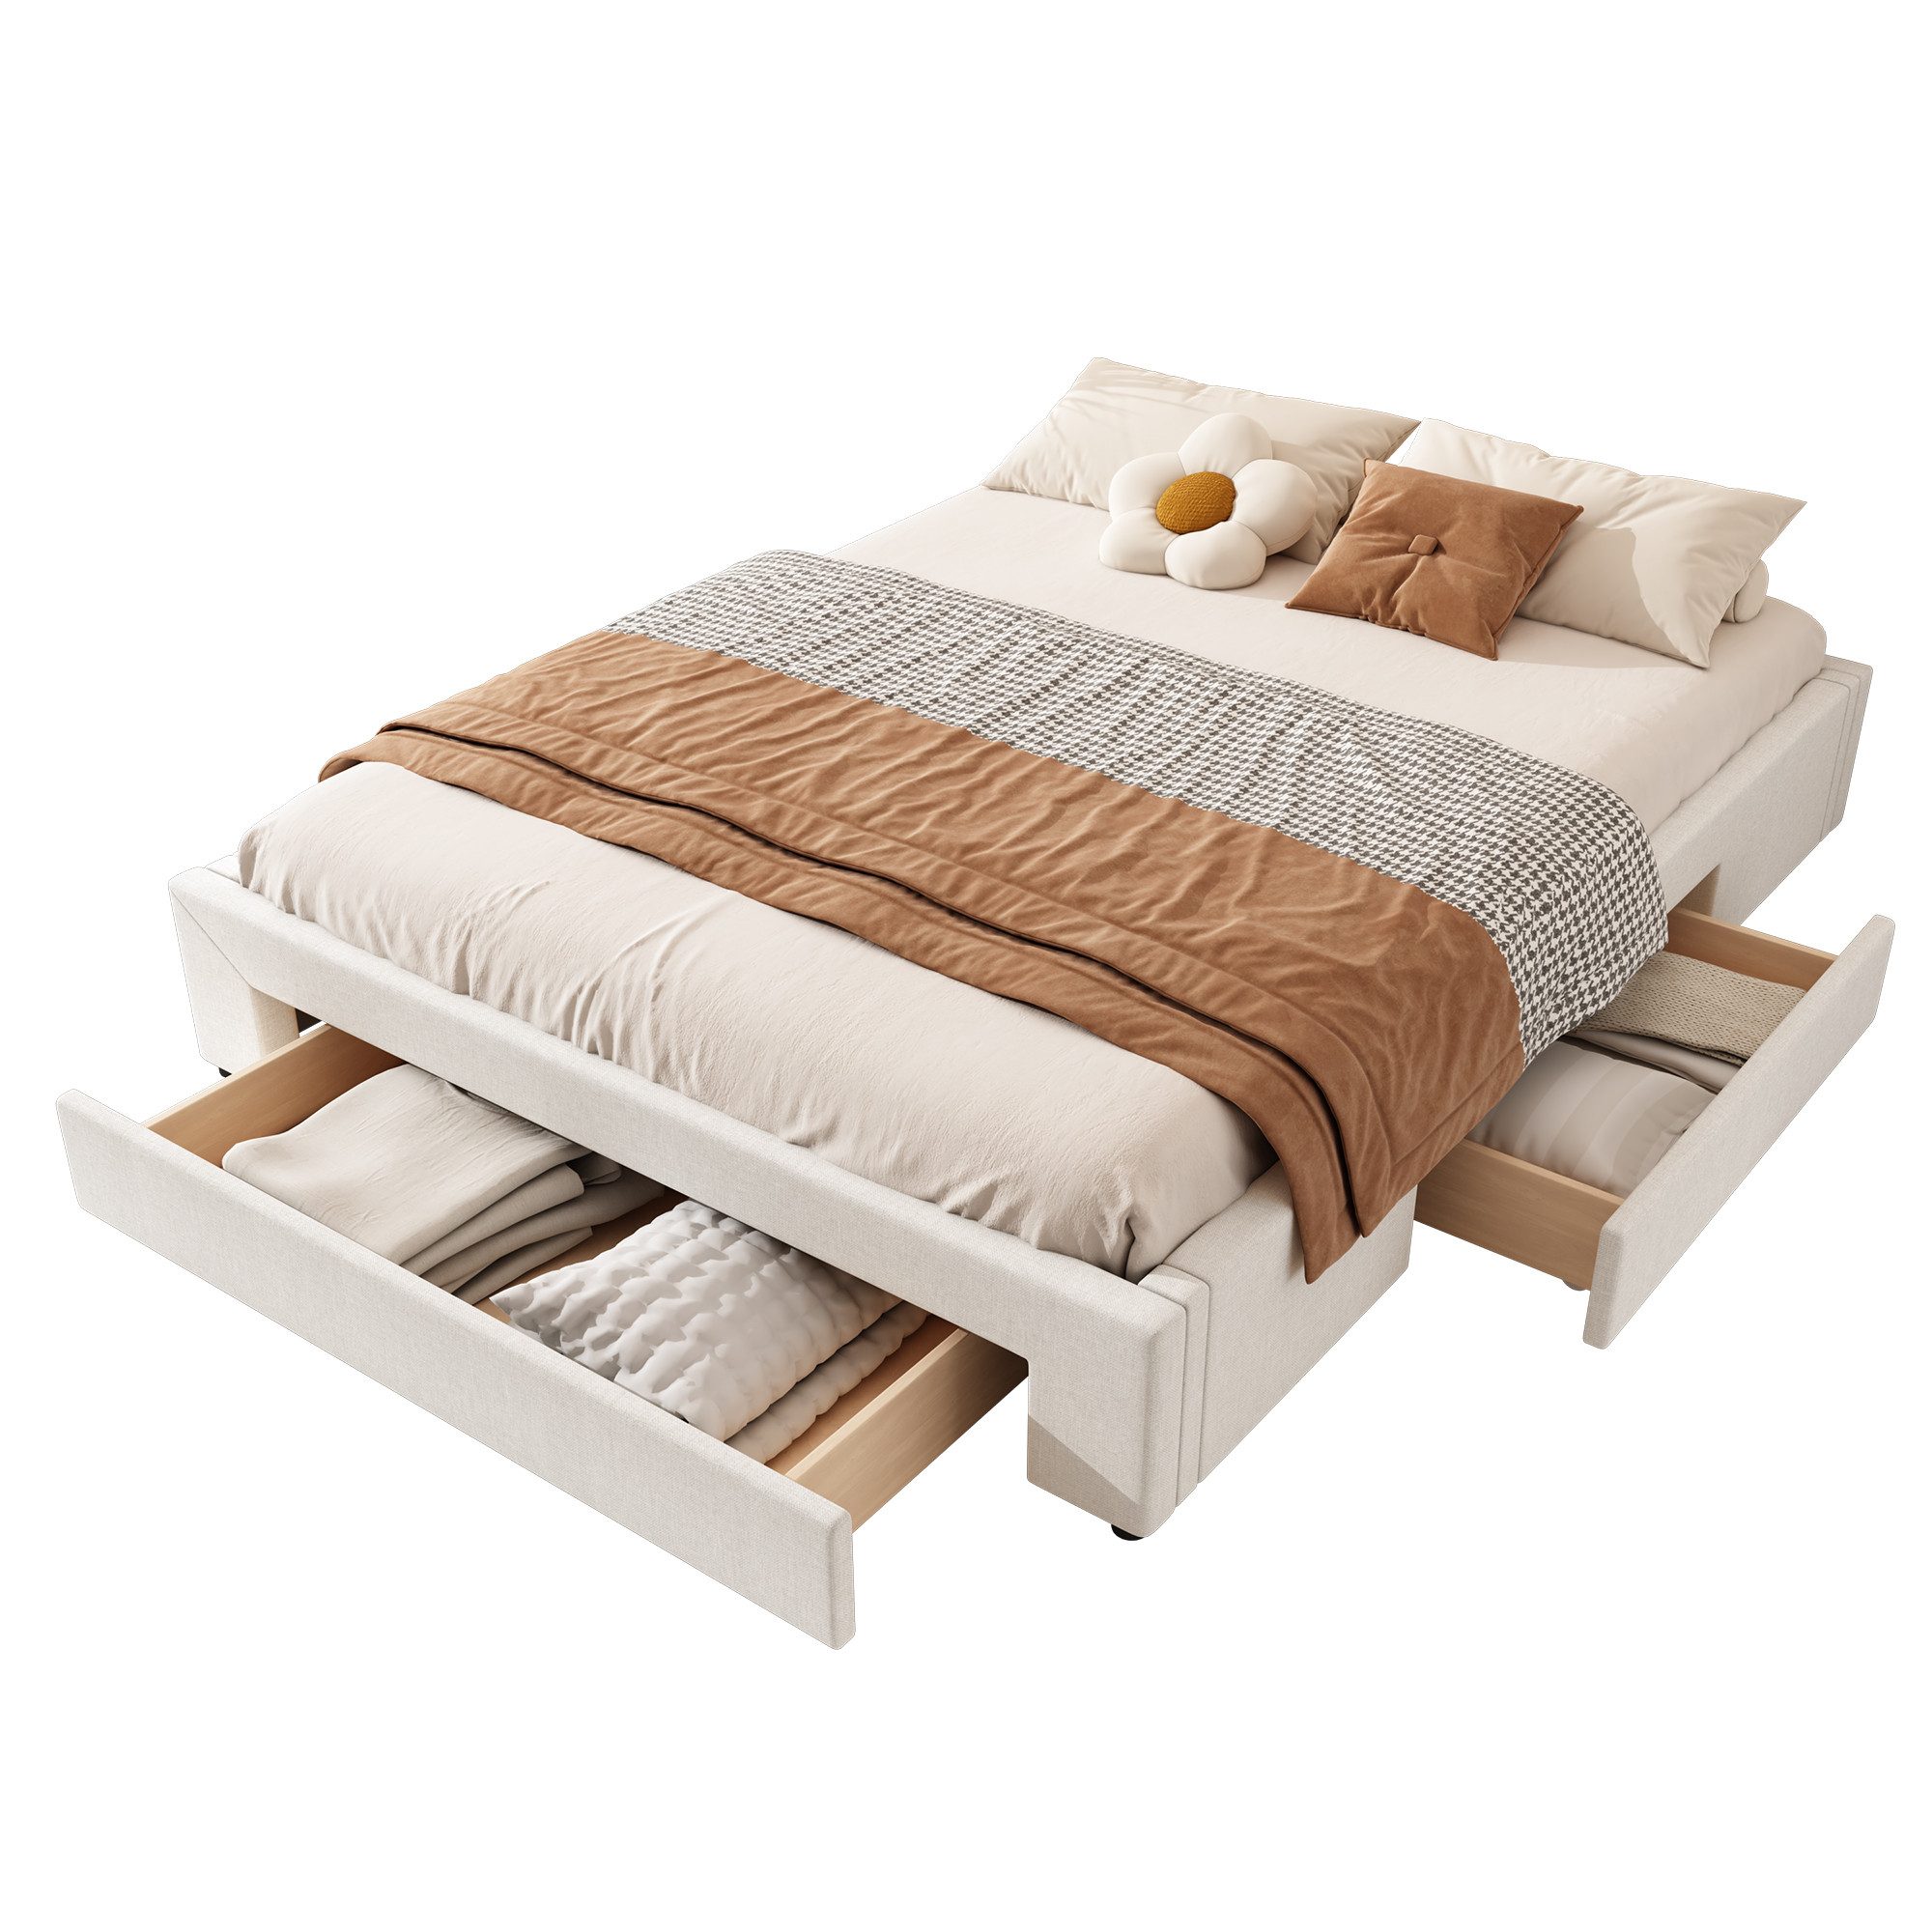 EXTSUD Polsterbett Flachbett, drei Ablagefächer, ohne Kopfteil, Bett,erhältlich in 2 Größen und 2 Farben, ohne Kopfteil